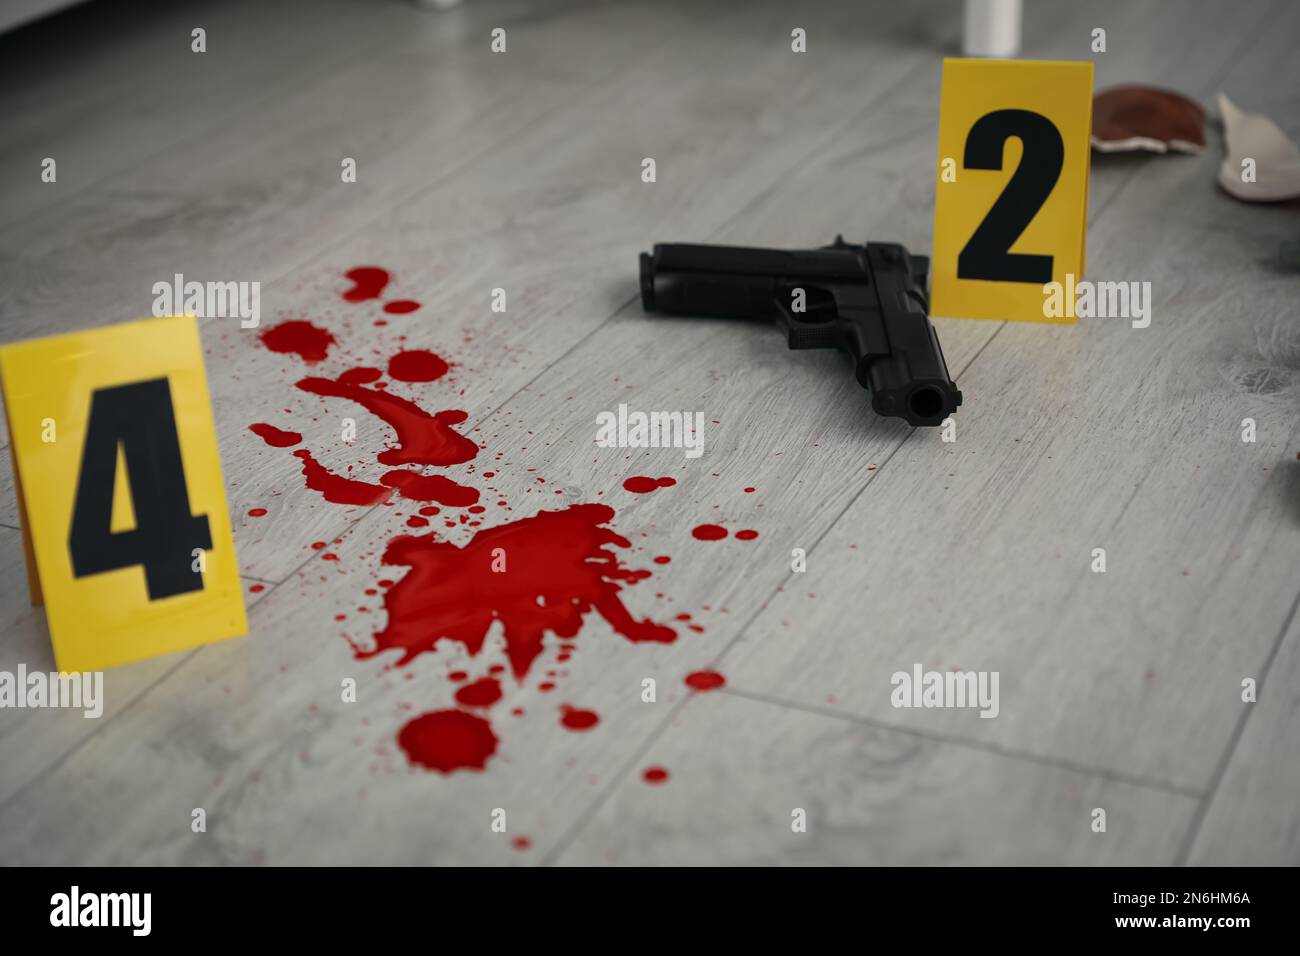 Marcatori di scena del crimine, pistola e sangue sul pavimento Foto Stock